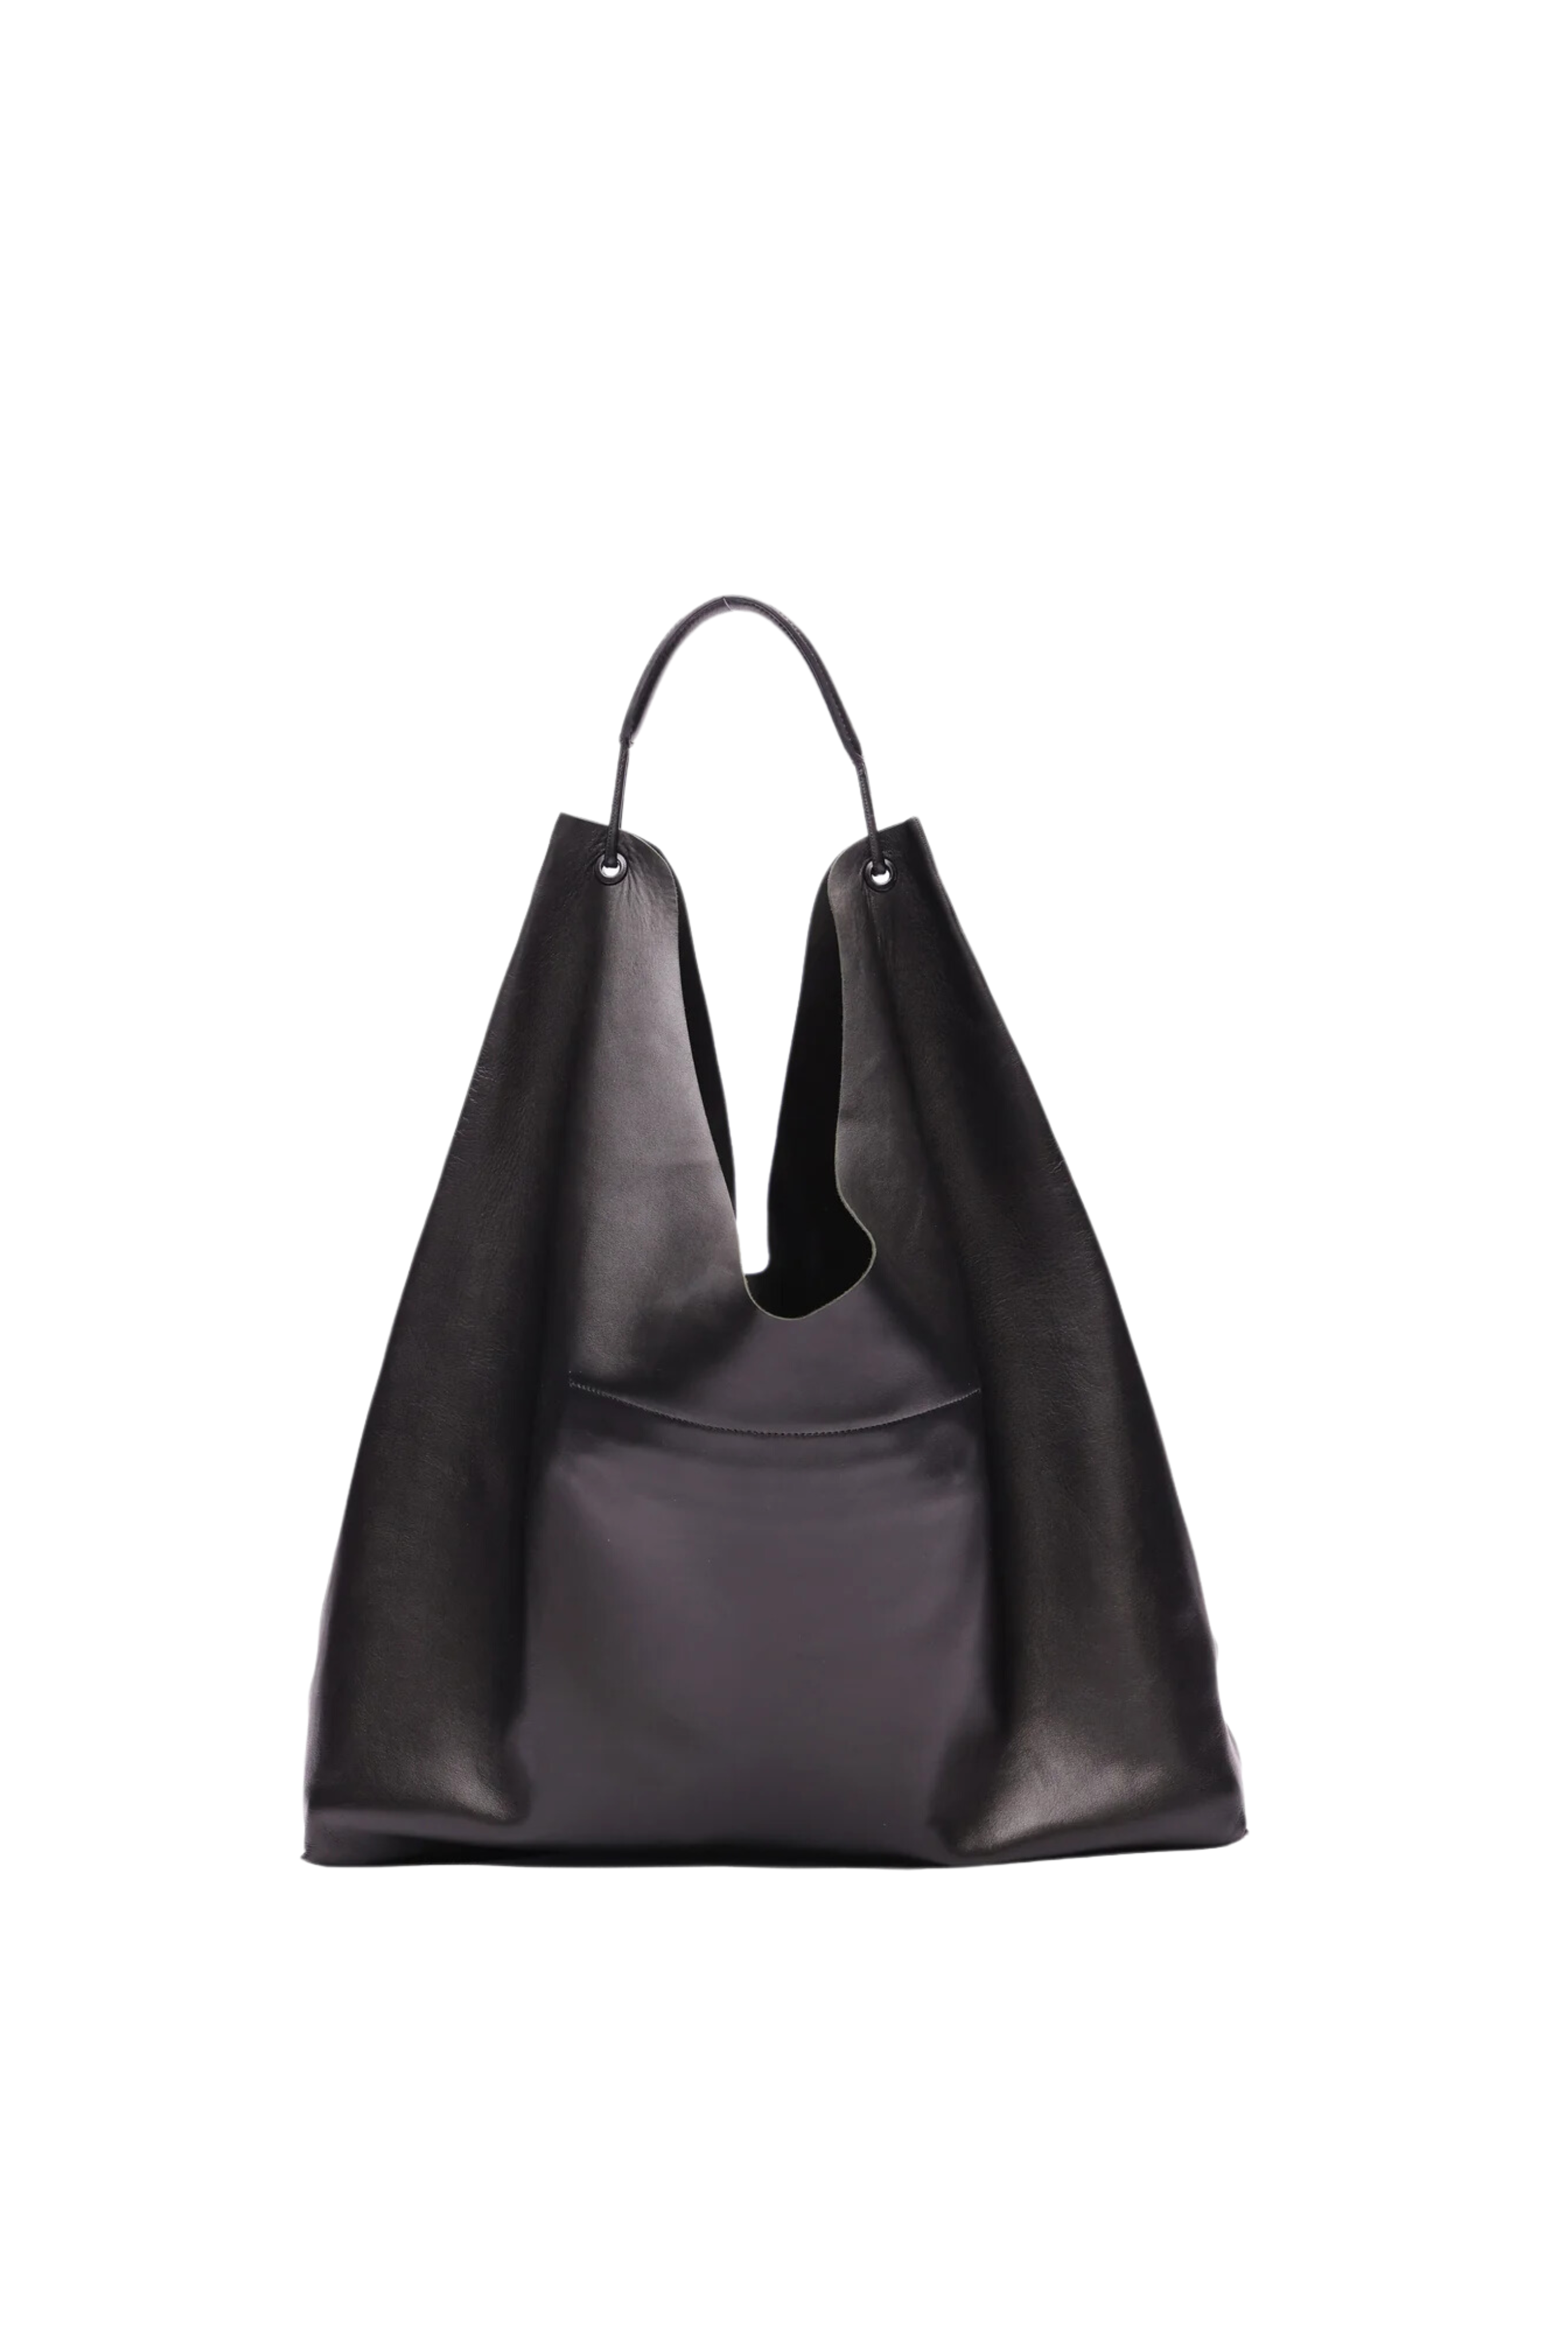 THE ROW Bindle 3 Leather Hobo Bag